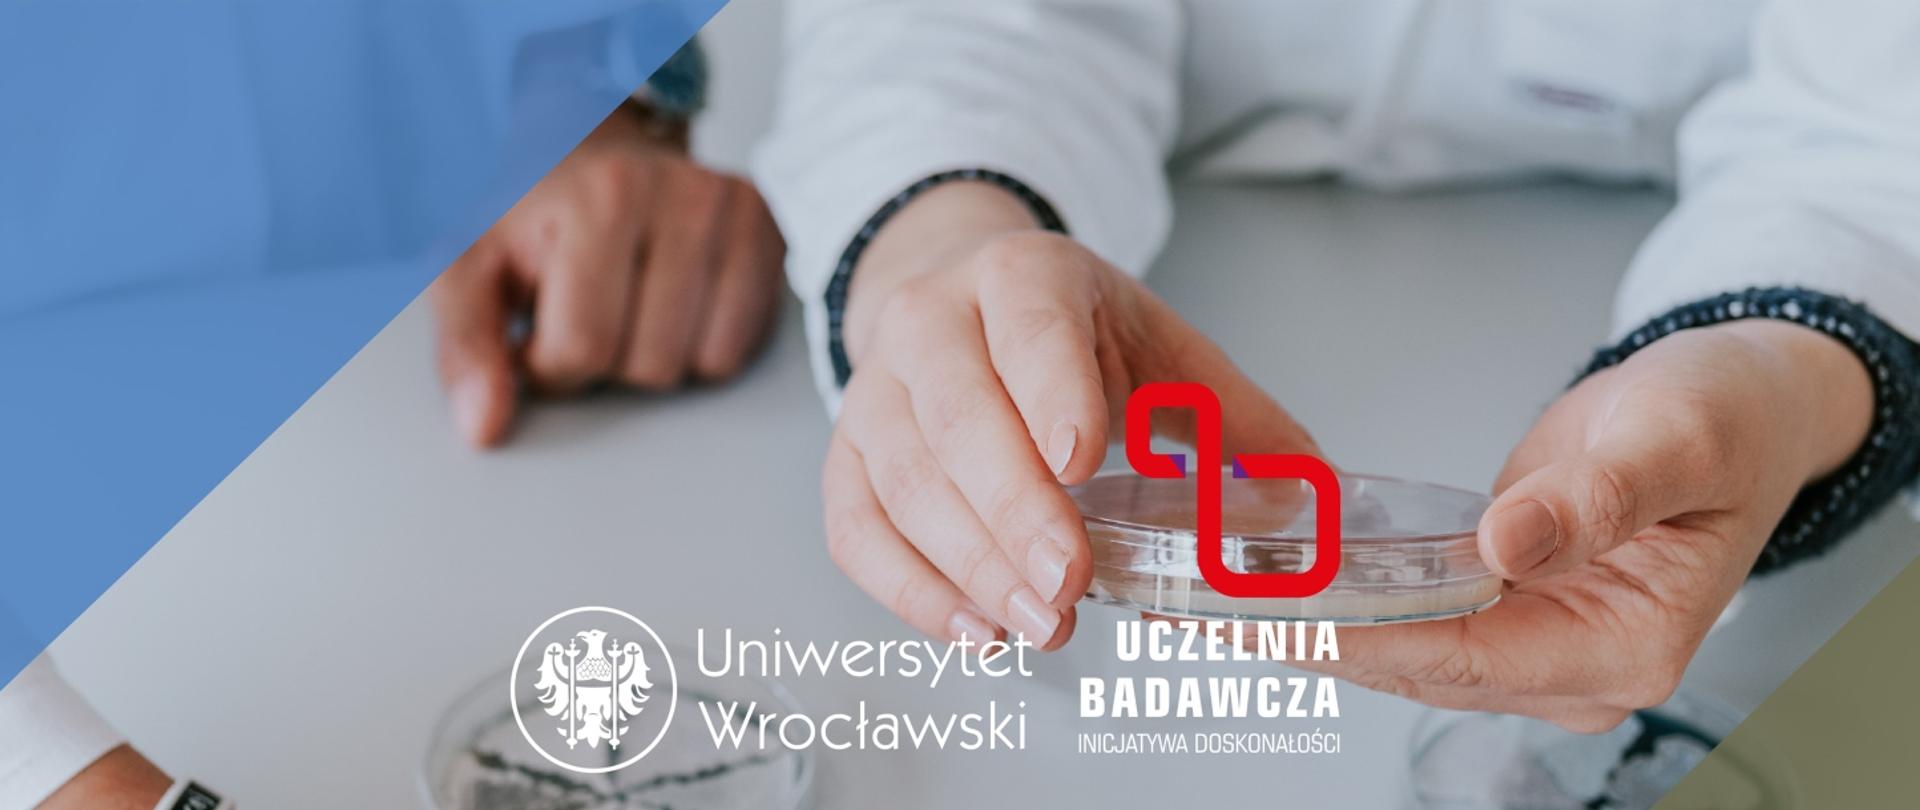 Grafika - logo Uniwersytetu Wrocławskiego i ręce trzymające szklaną szalkę